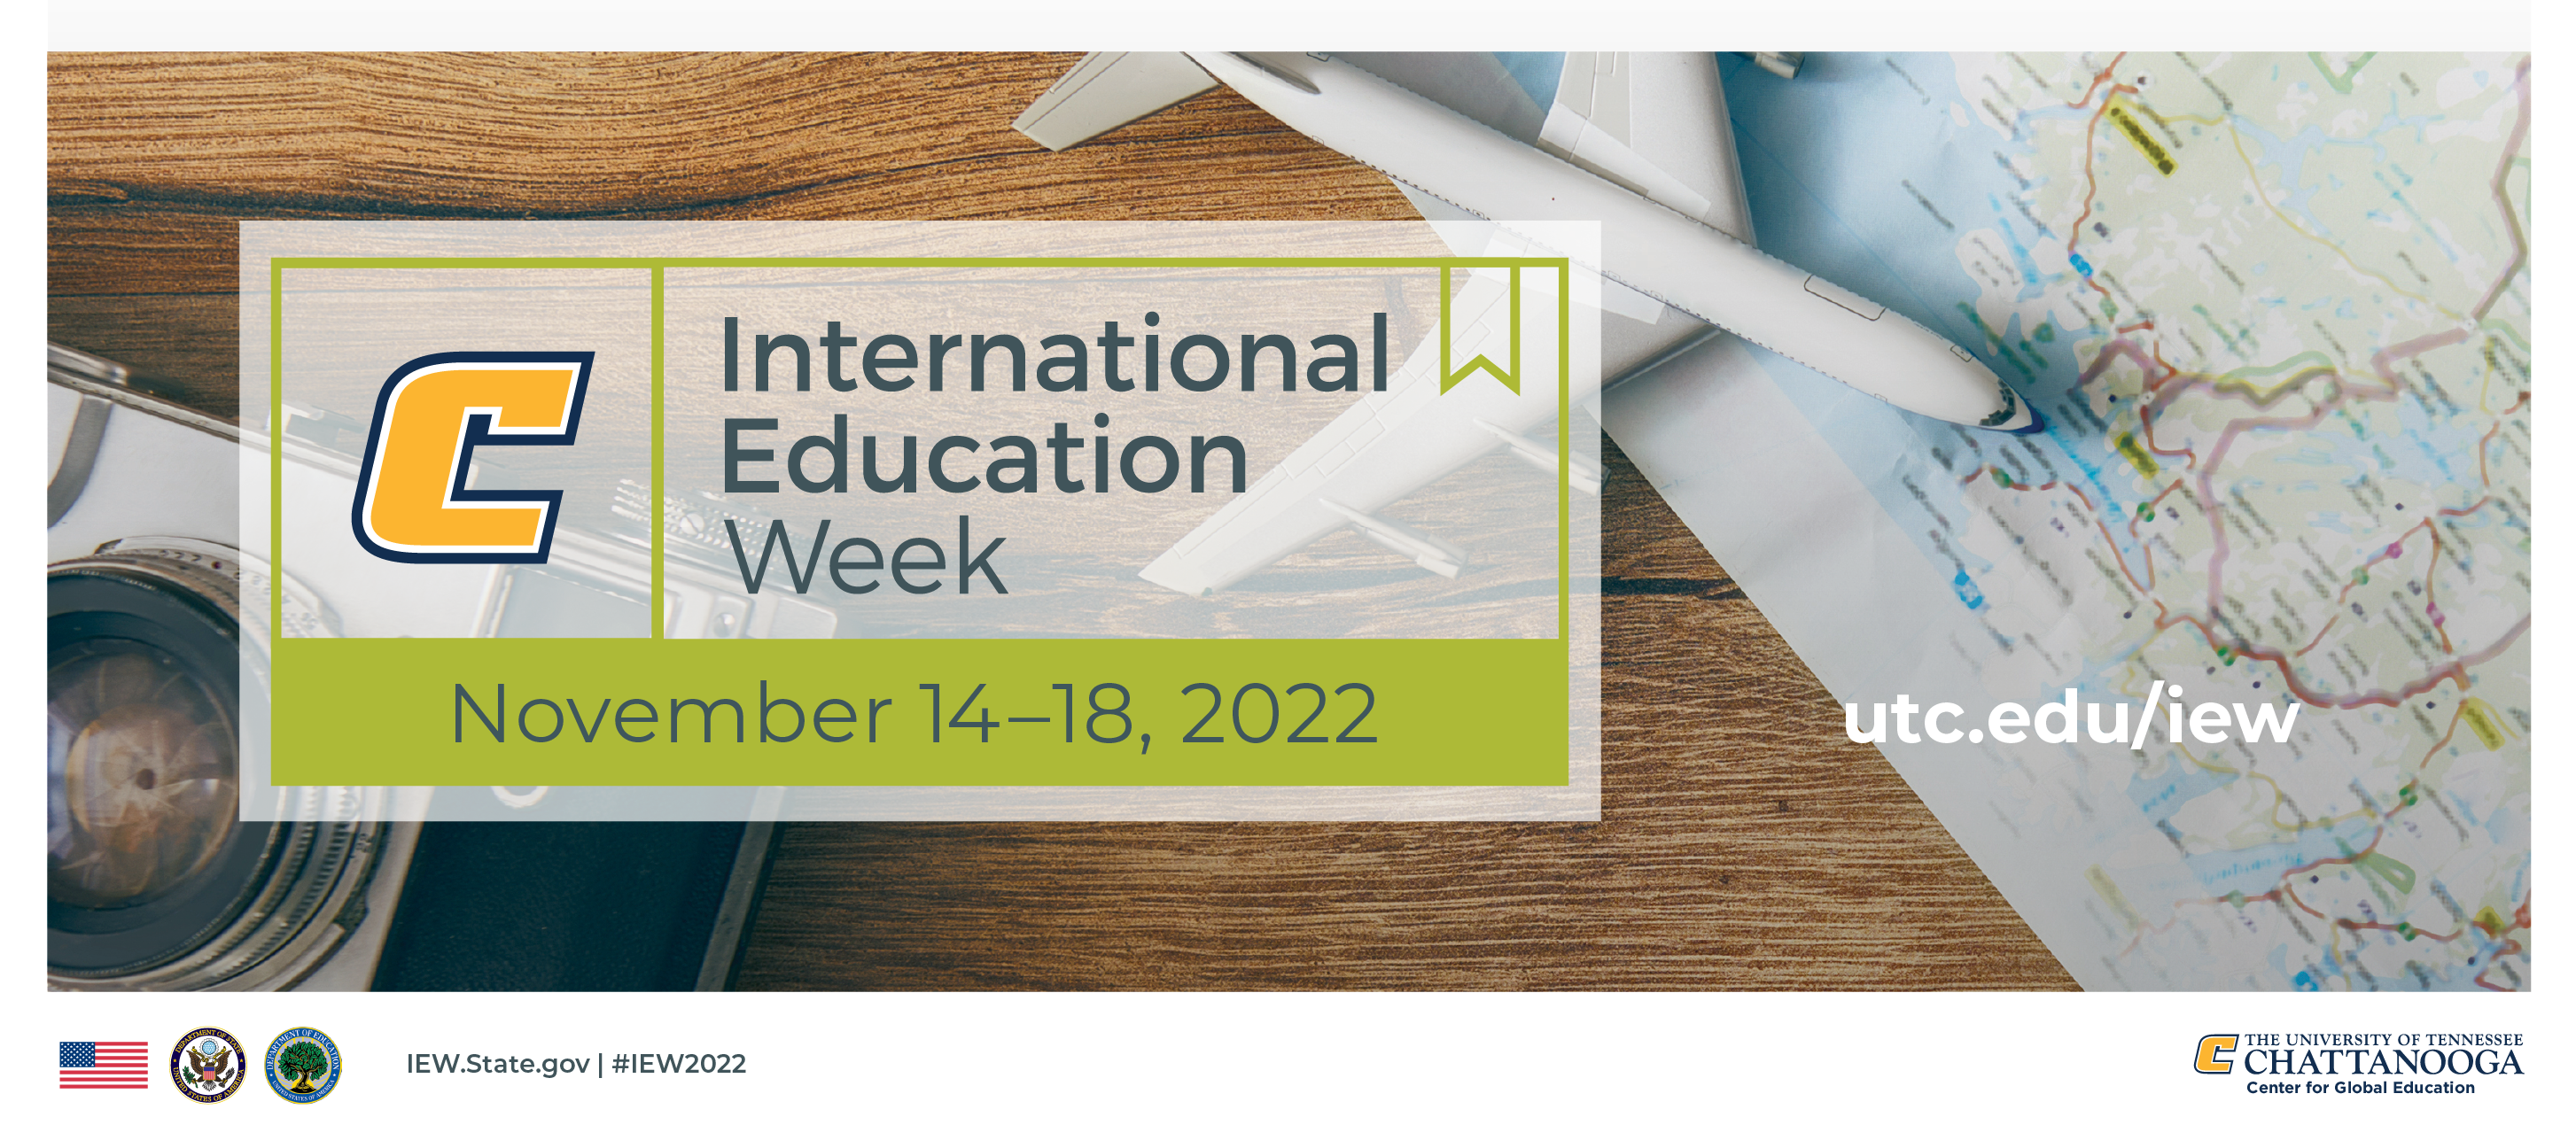 International Education Week November 14-18, 2022